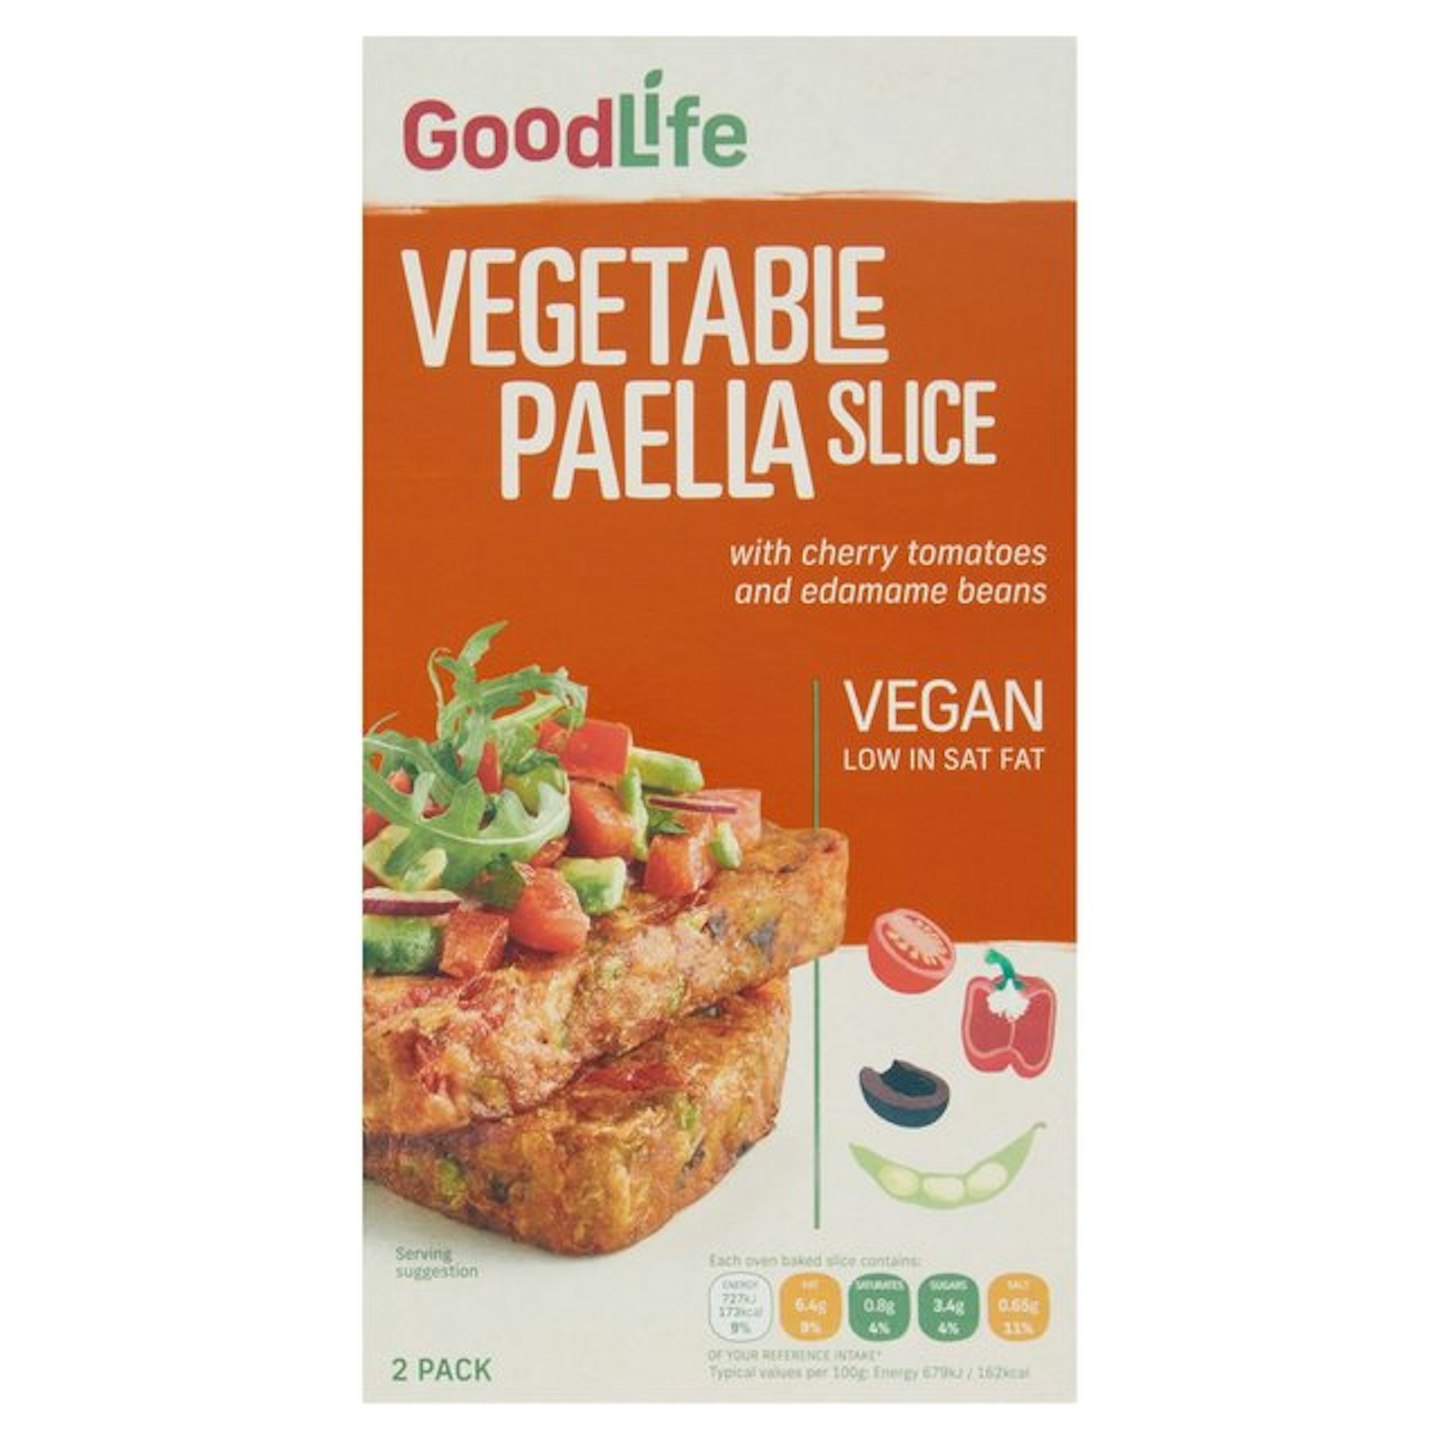 Goodlife Vegetable Paella Slice